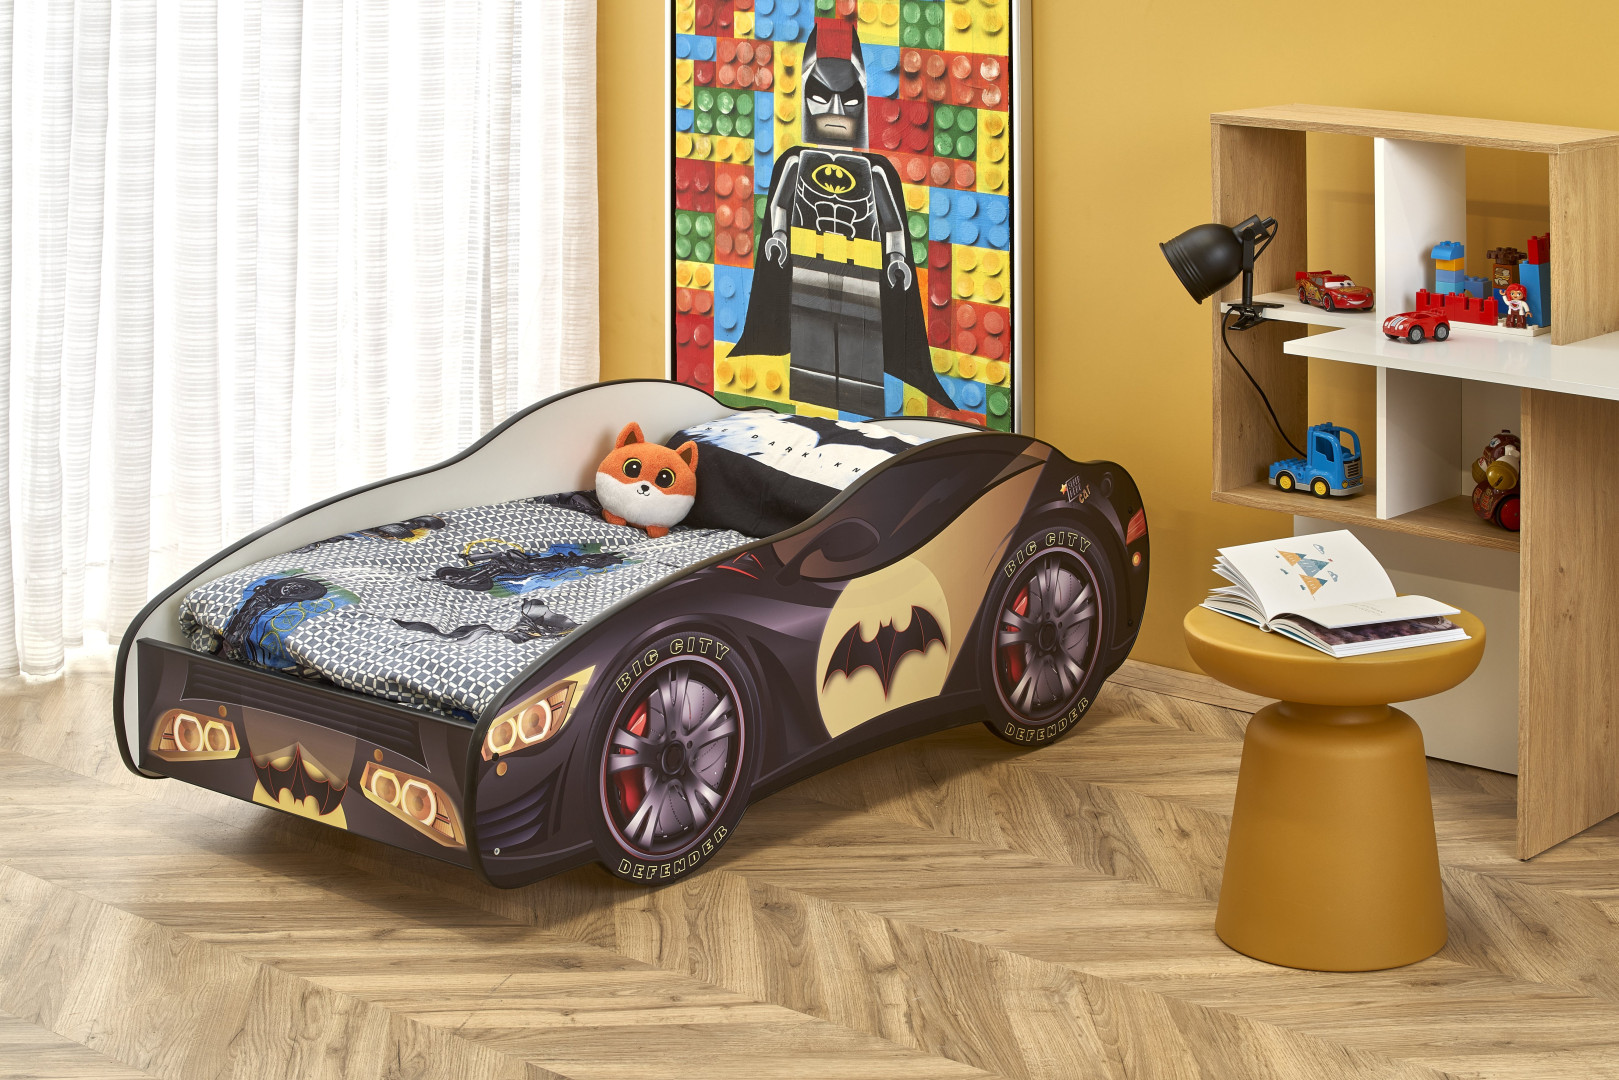 Łóżko Batcar dla małych superbohaterów